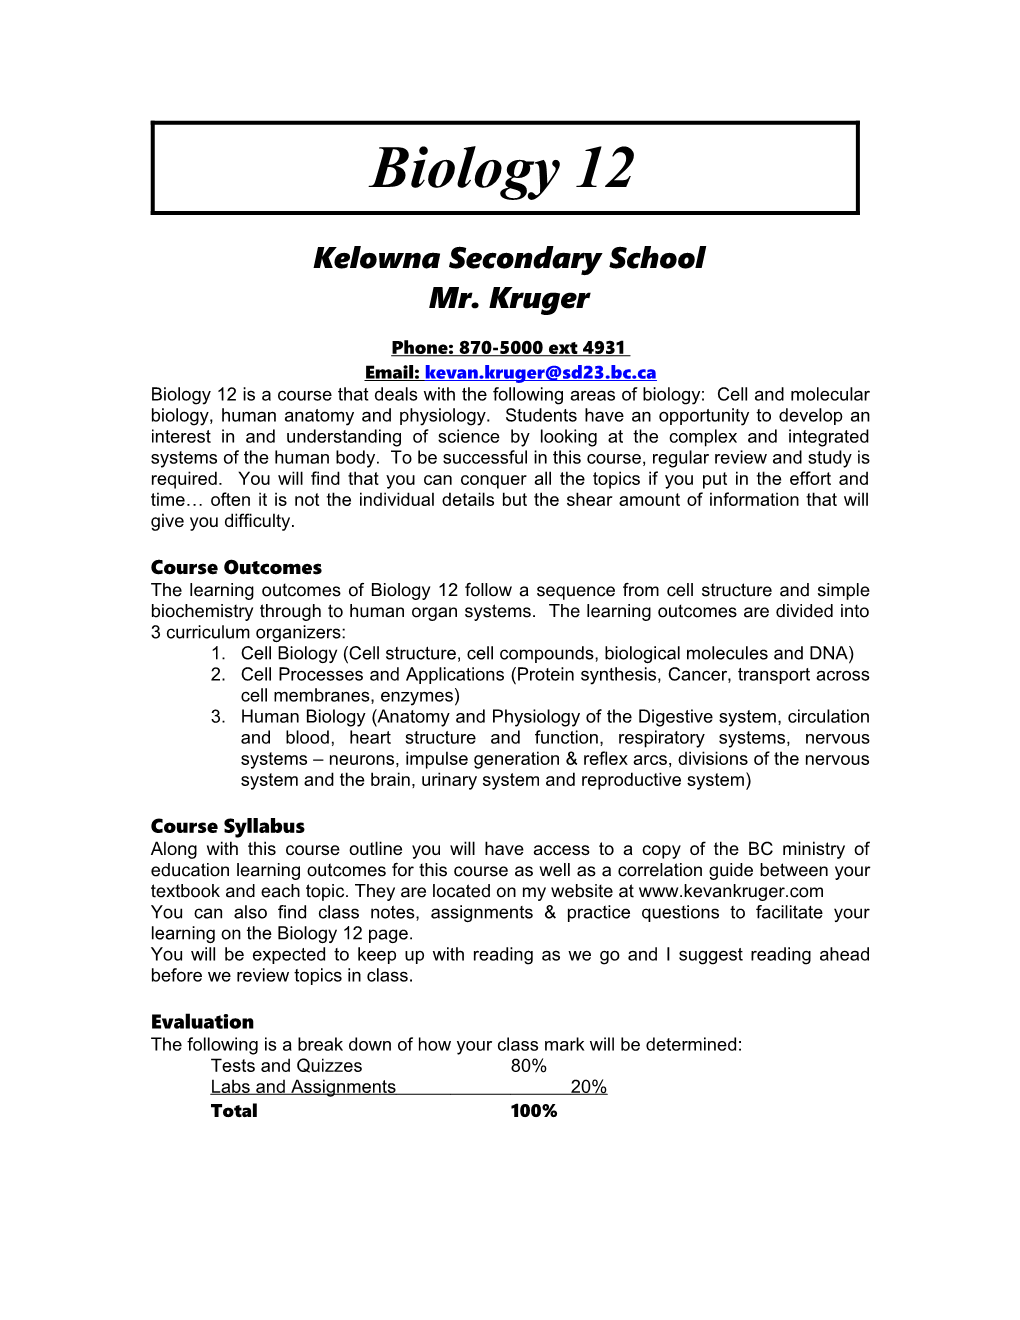 BIOLOGY 12 Mr. Kruger